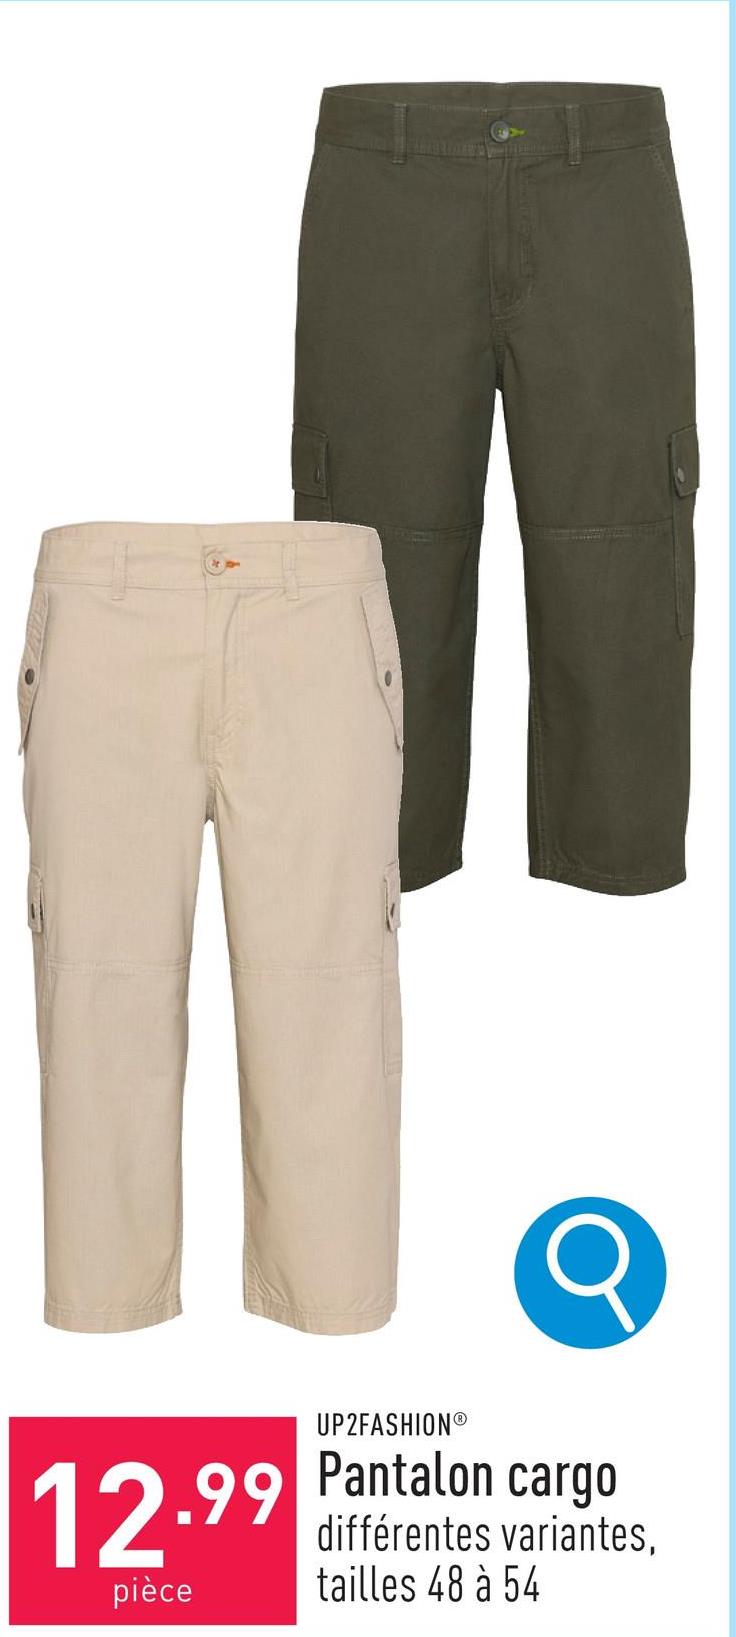 Pantalon cargo coton, tapered fit, longueur 3/4, choix entre différentes variantes, tailles 48 à 54, certifié OEKO-TEX®